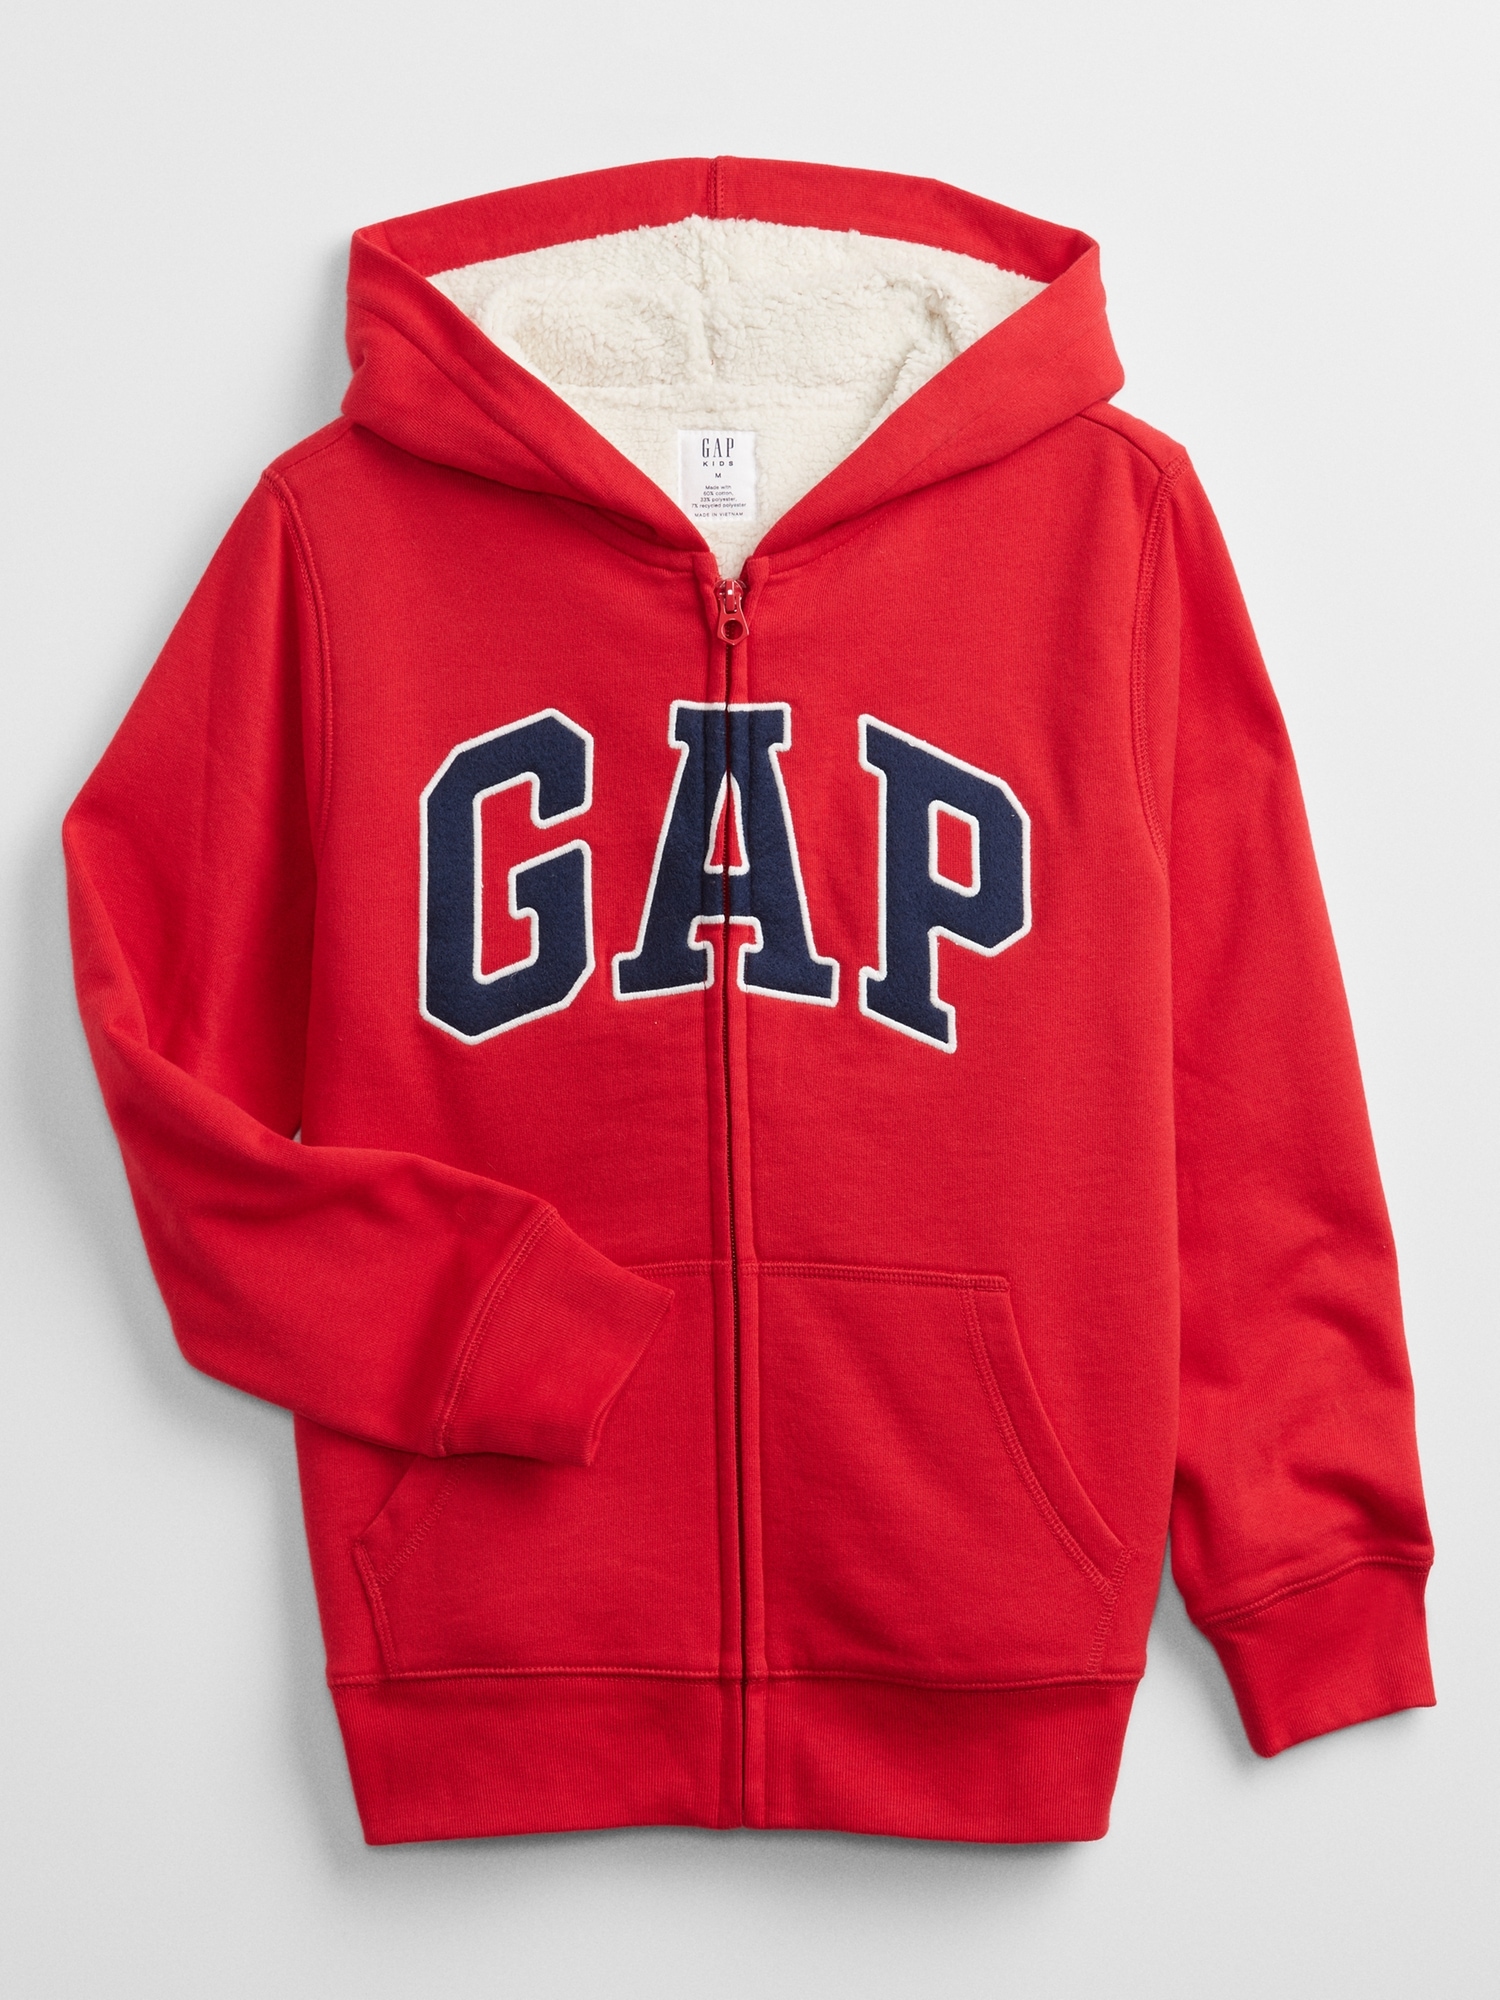 Kids Gap Logo Sherpa-Lined Hoodie | Gap Factory